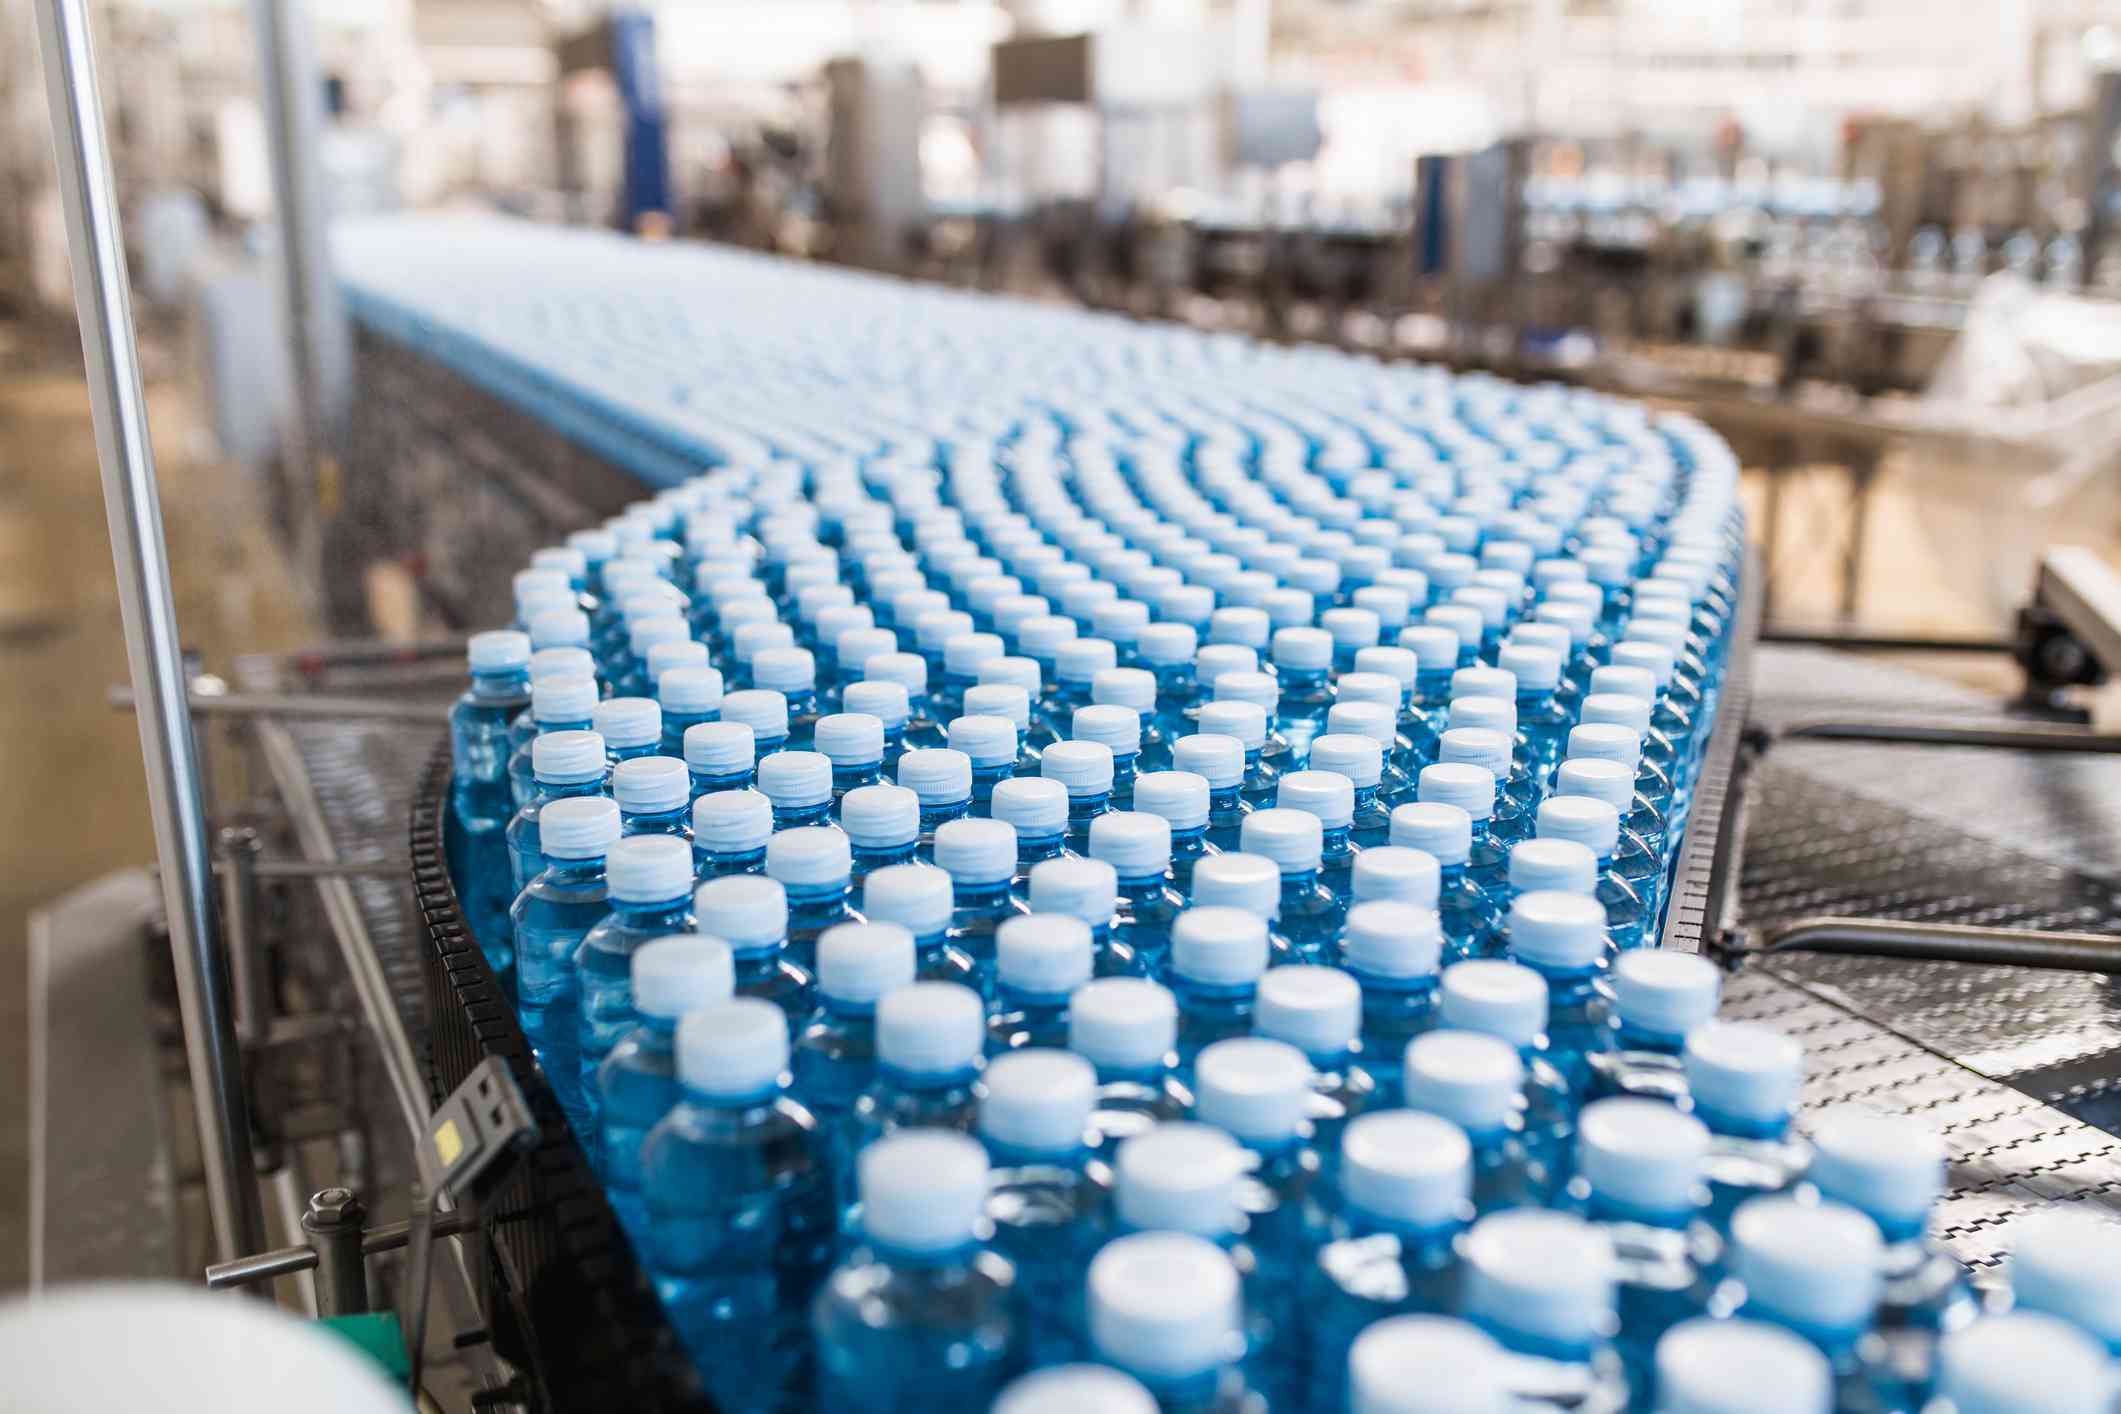 Botellas de agua de plástico en una cinta transportadora